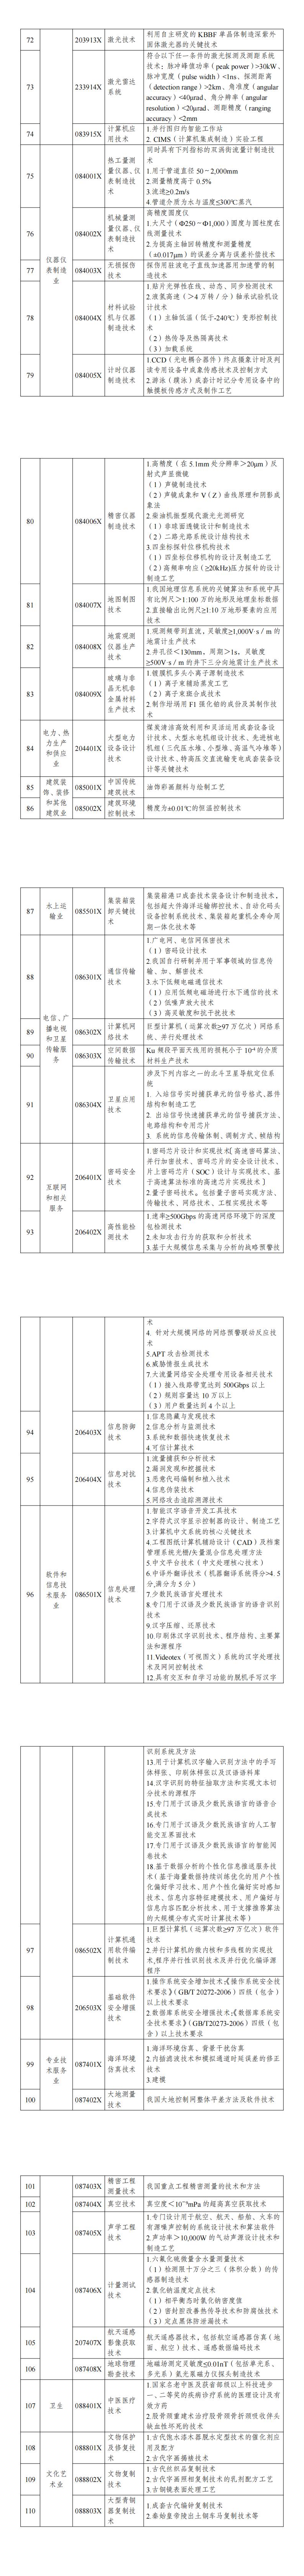 《中国禁止出口限制出口技术目录》_00(2).jpg